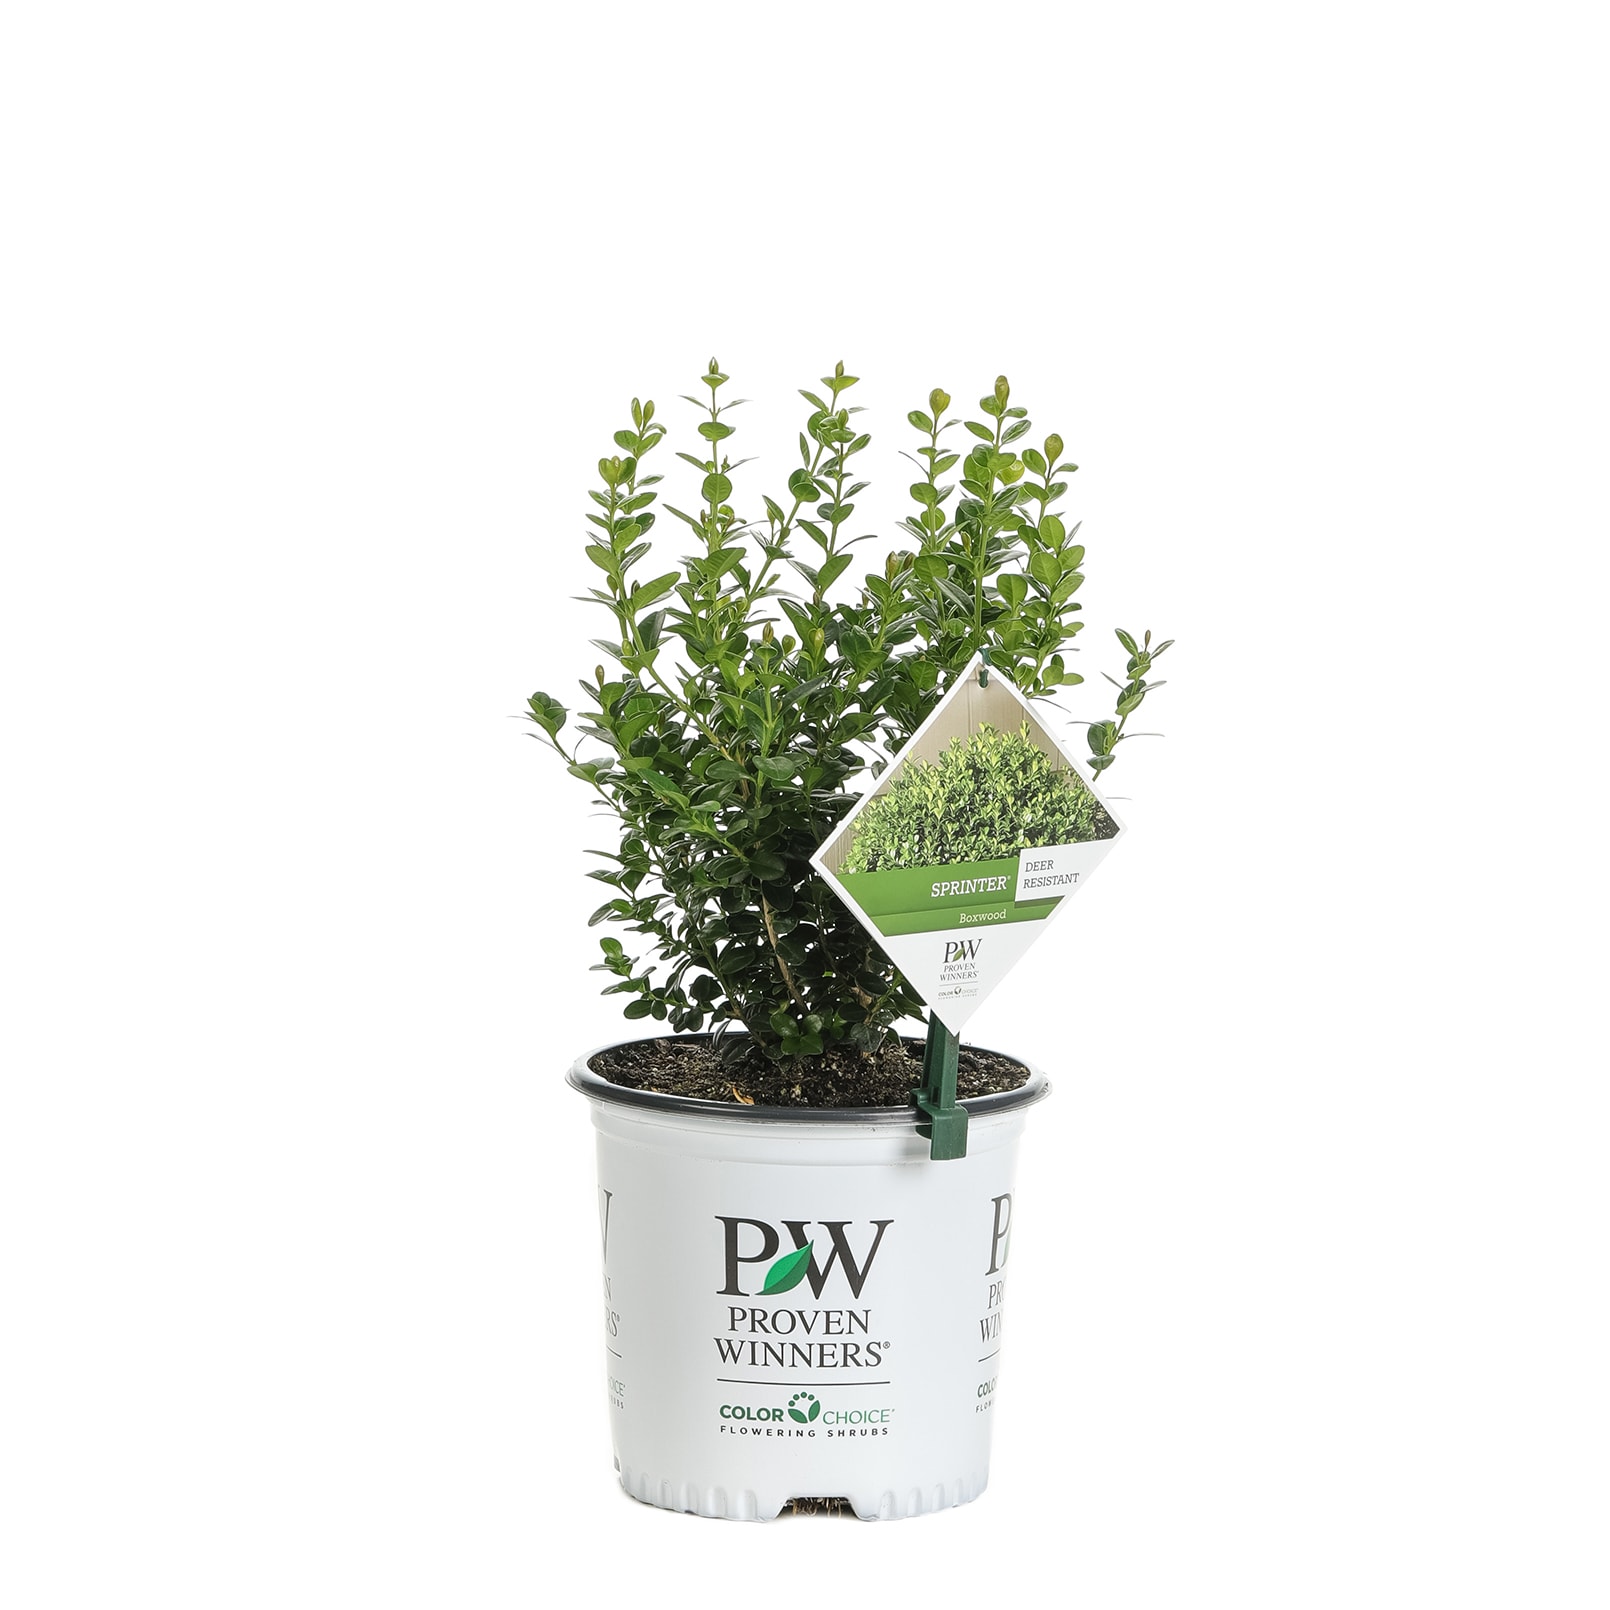 Short/Medium Bush - Badgersett Hazelnut PLANTS, Proptek 1/3 Gallon